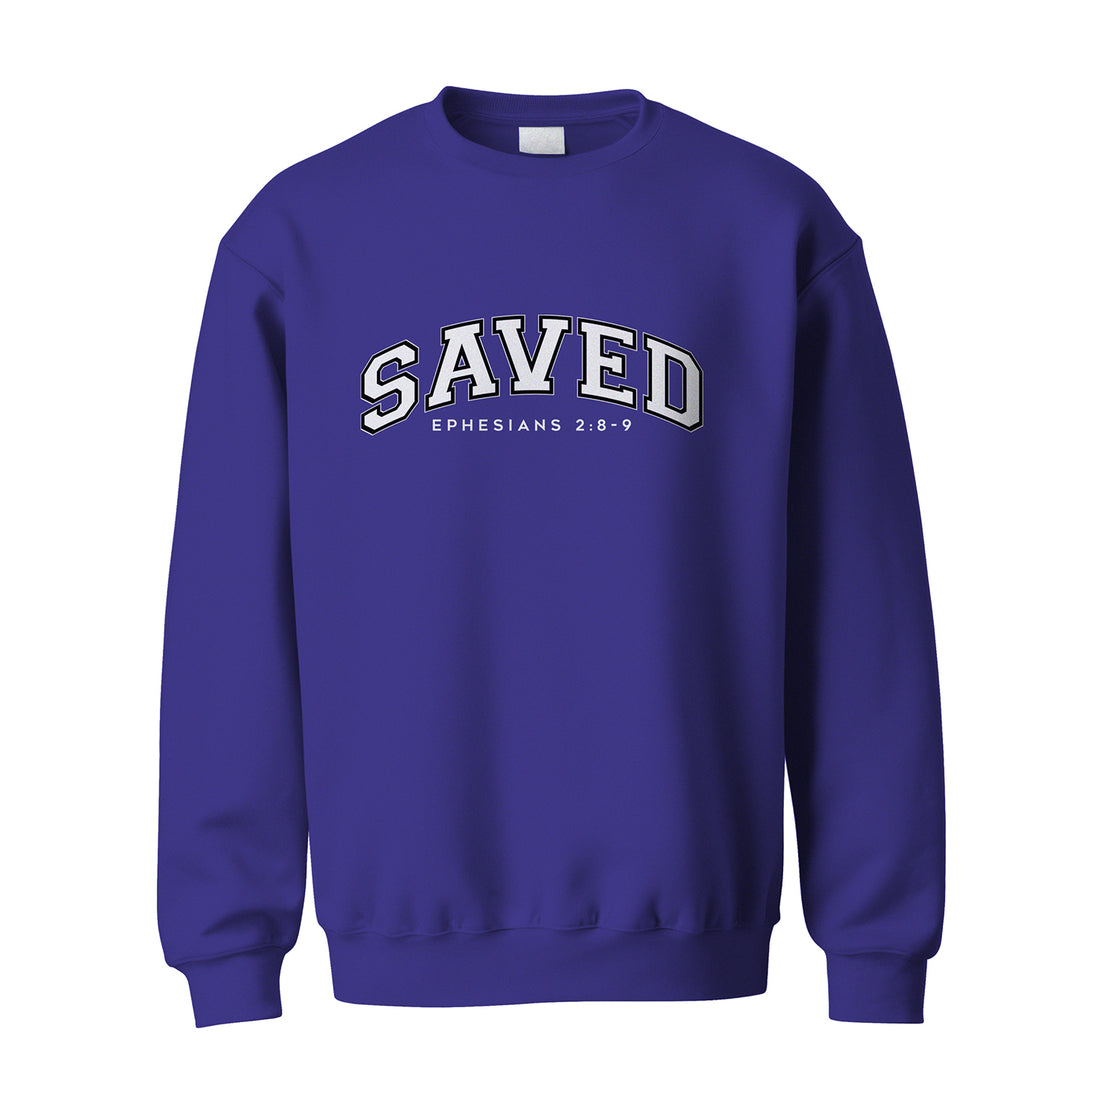 Saved - Sweatshirts